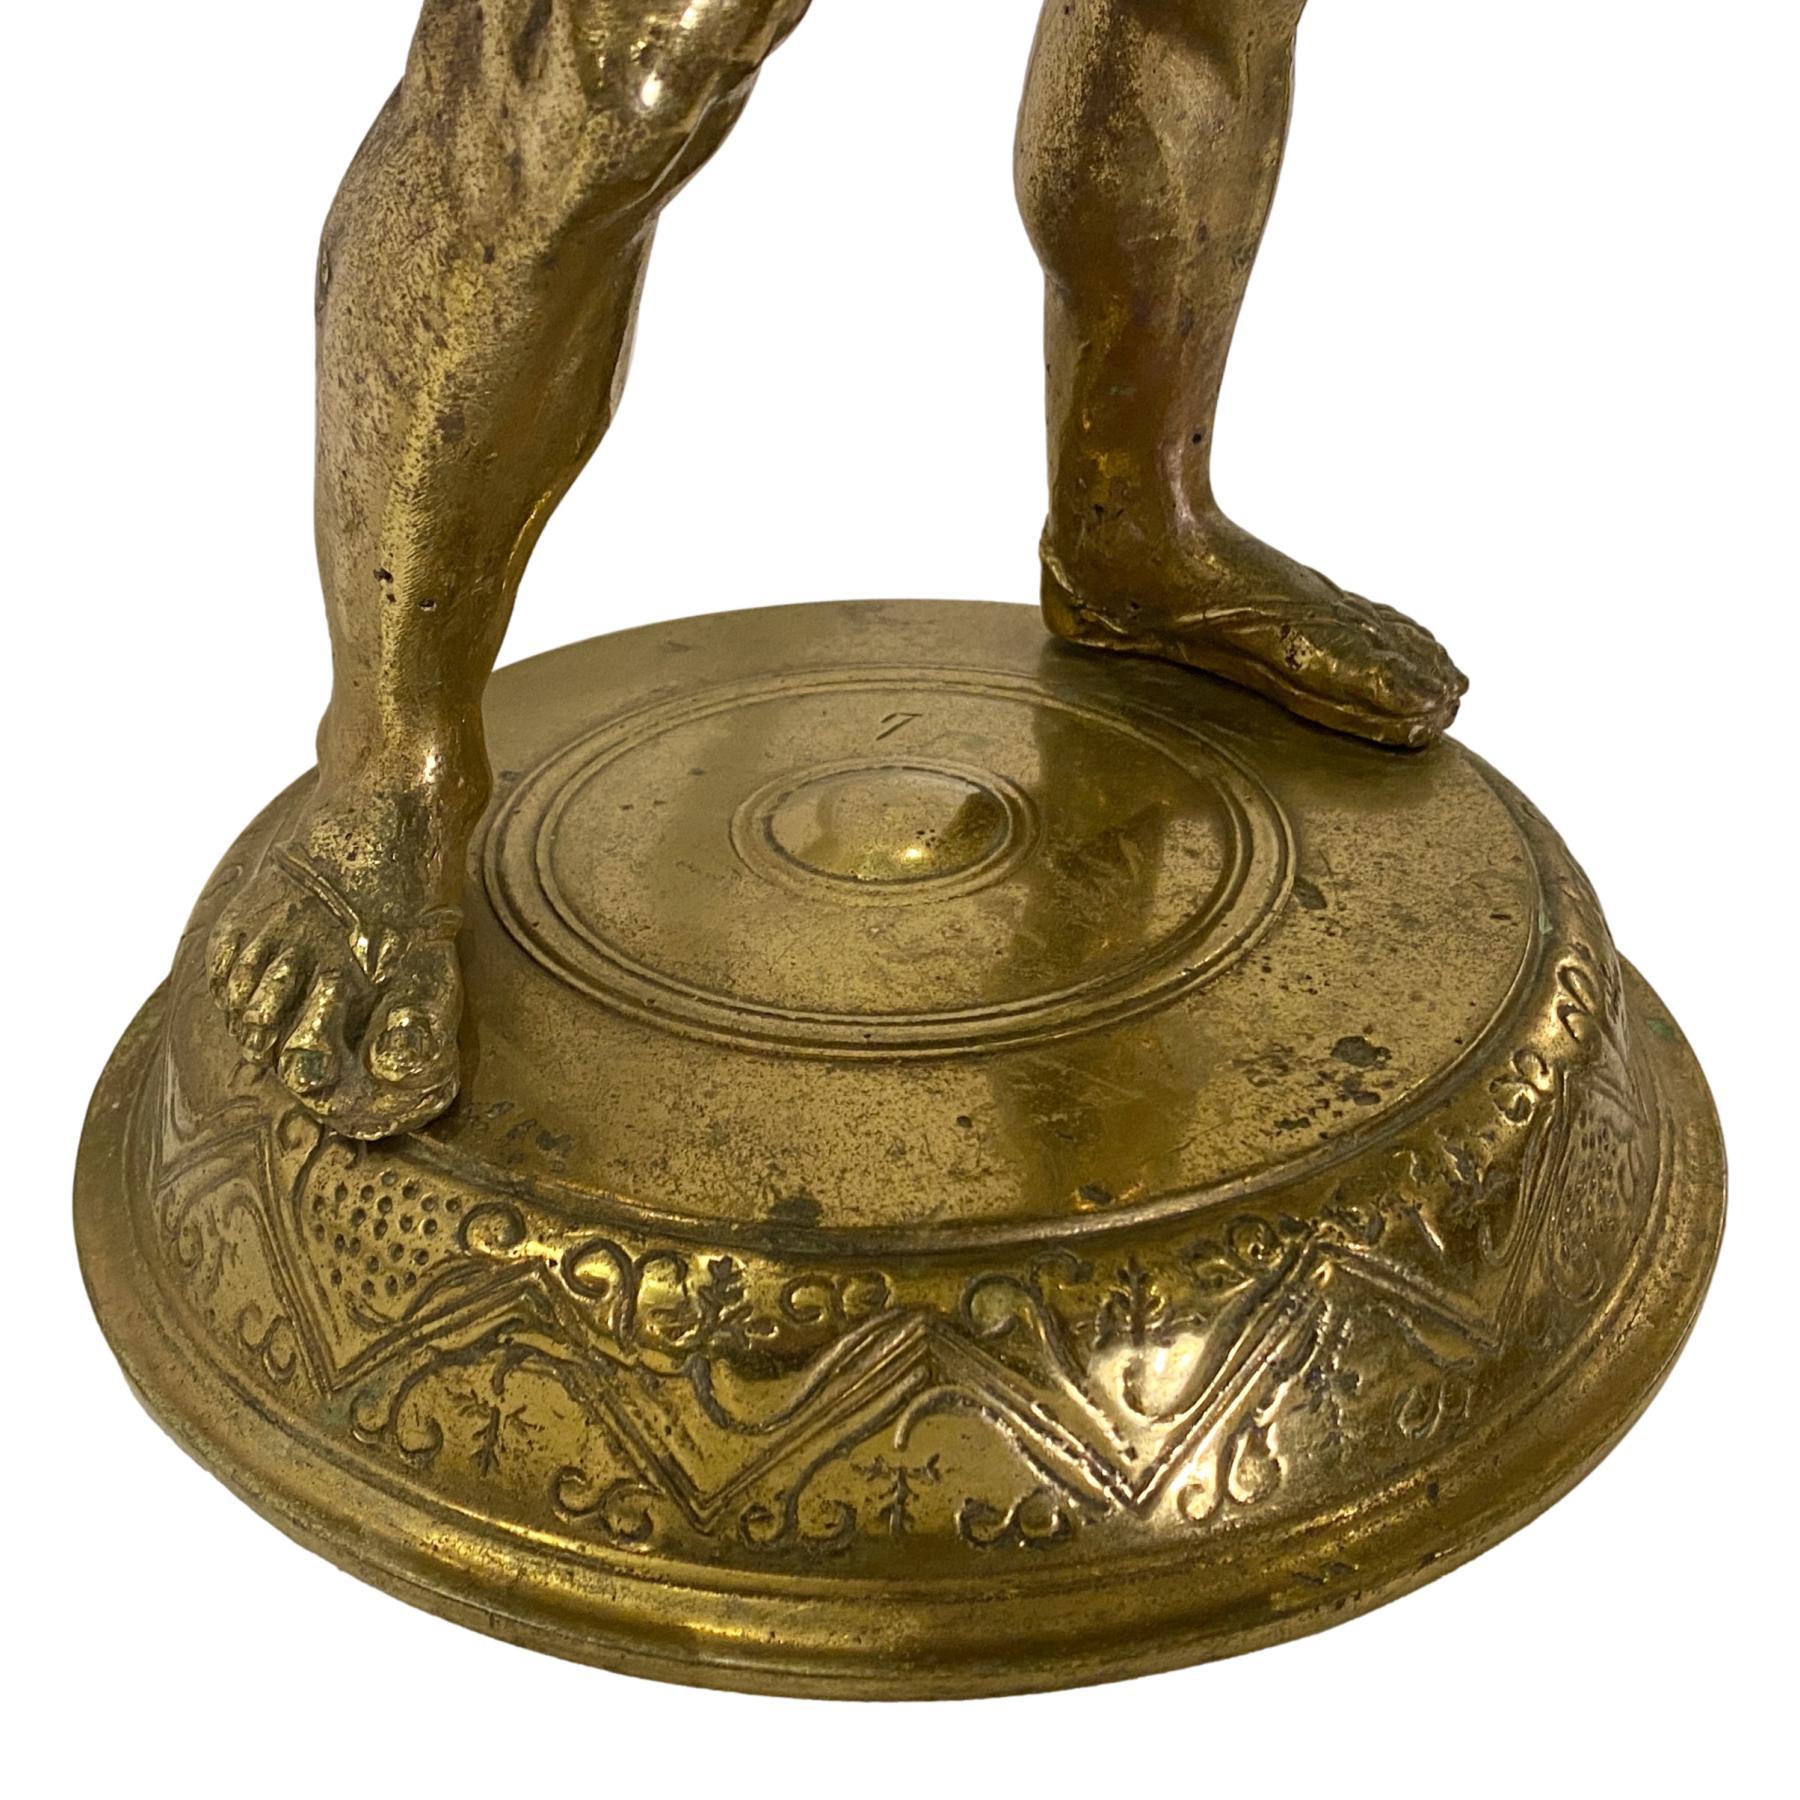 Eine italienische Bronzefigur aus dem späten 19. Jahrhundert, die Bacchus darstellt, der einen geflochtenen Bronzekorb hält, mit originaler Patina.

Abmessungen:
Höhe 24